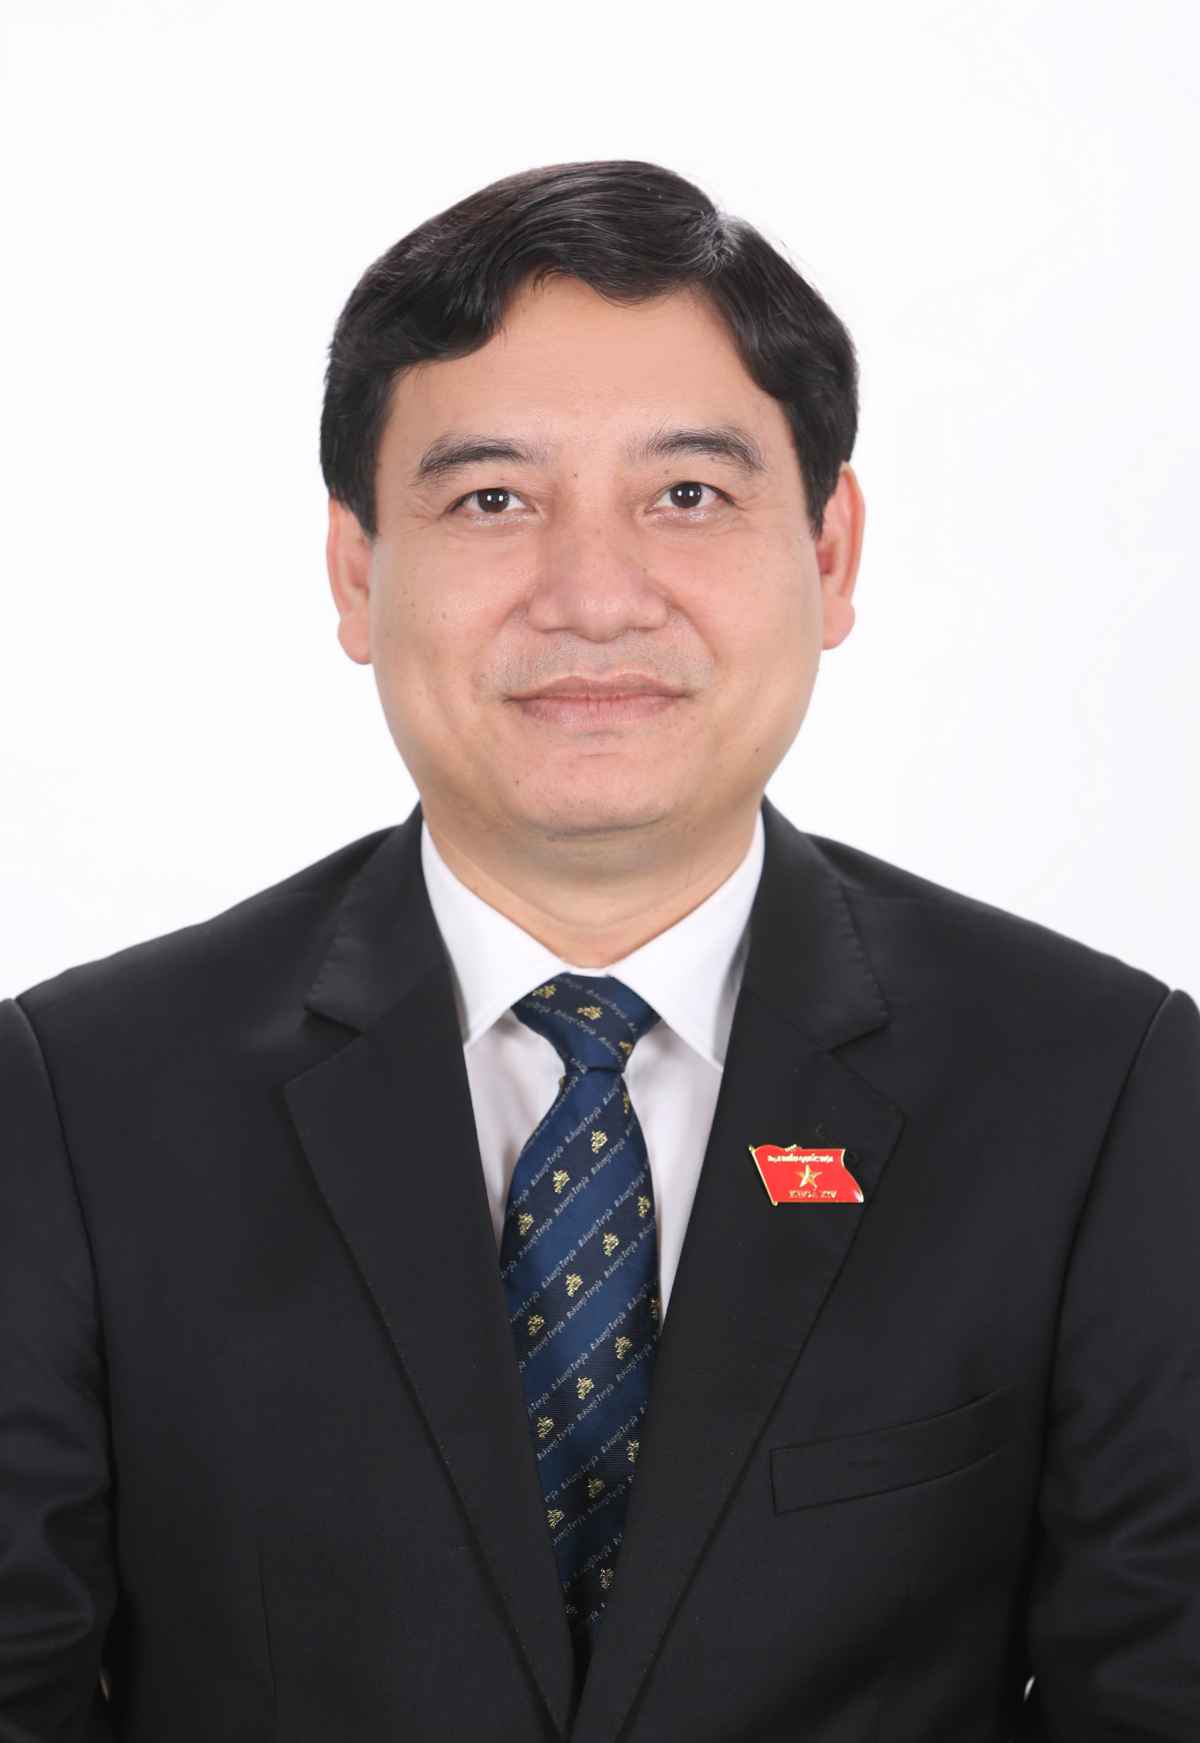 Đồng chí PGS.TS Nguyễn Đắc Vinh,  Ủy viên TW Đảng, Bí thư Tỉnh ủy Nghệ An 